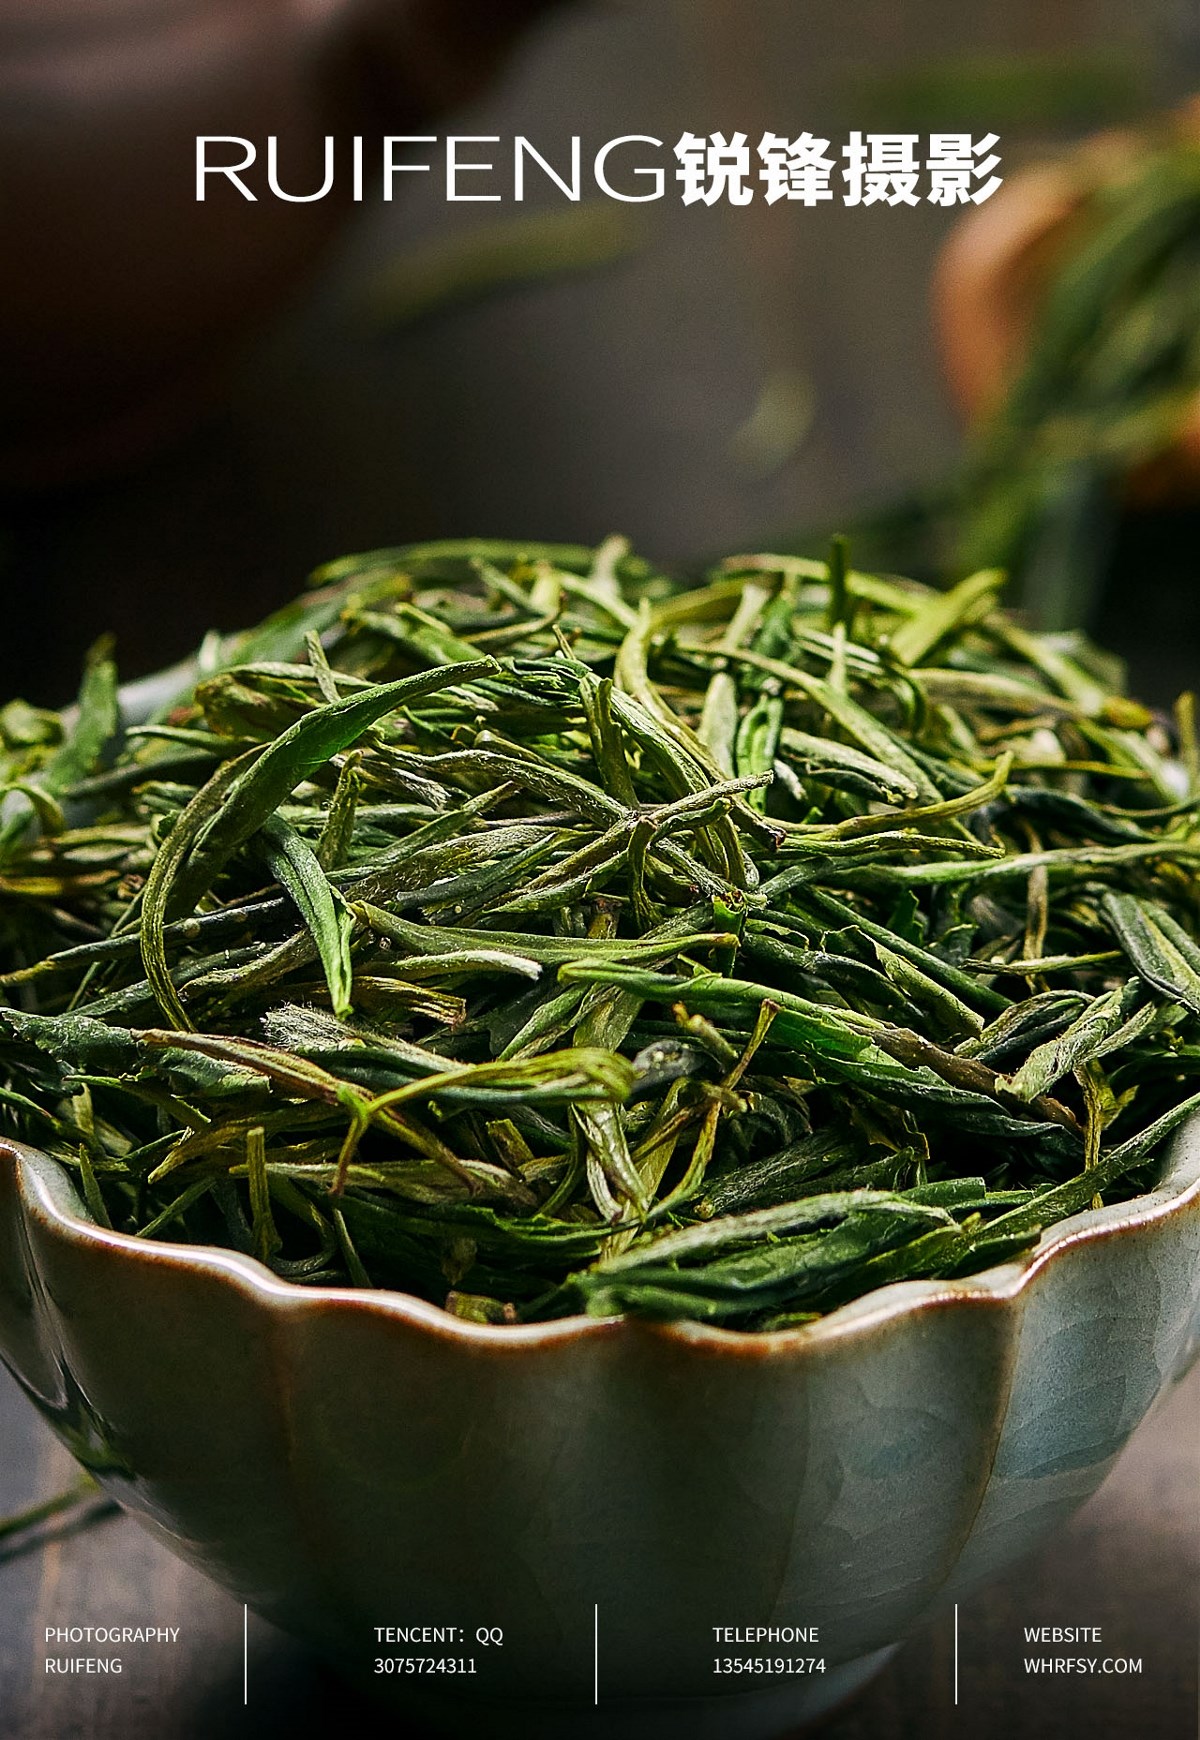 武汉茶叶摄影|茶叶拍摄|红茶绿茶|茶叶详情图|RUIFENG锐锋摄影